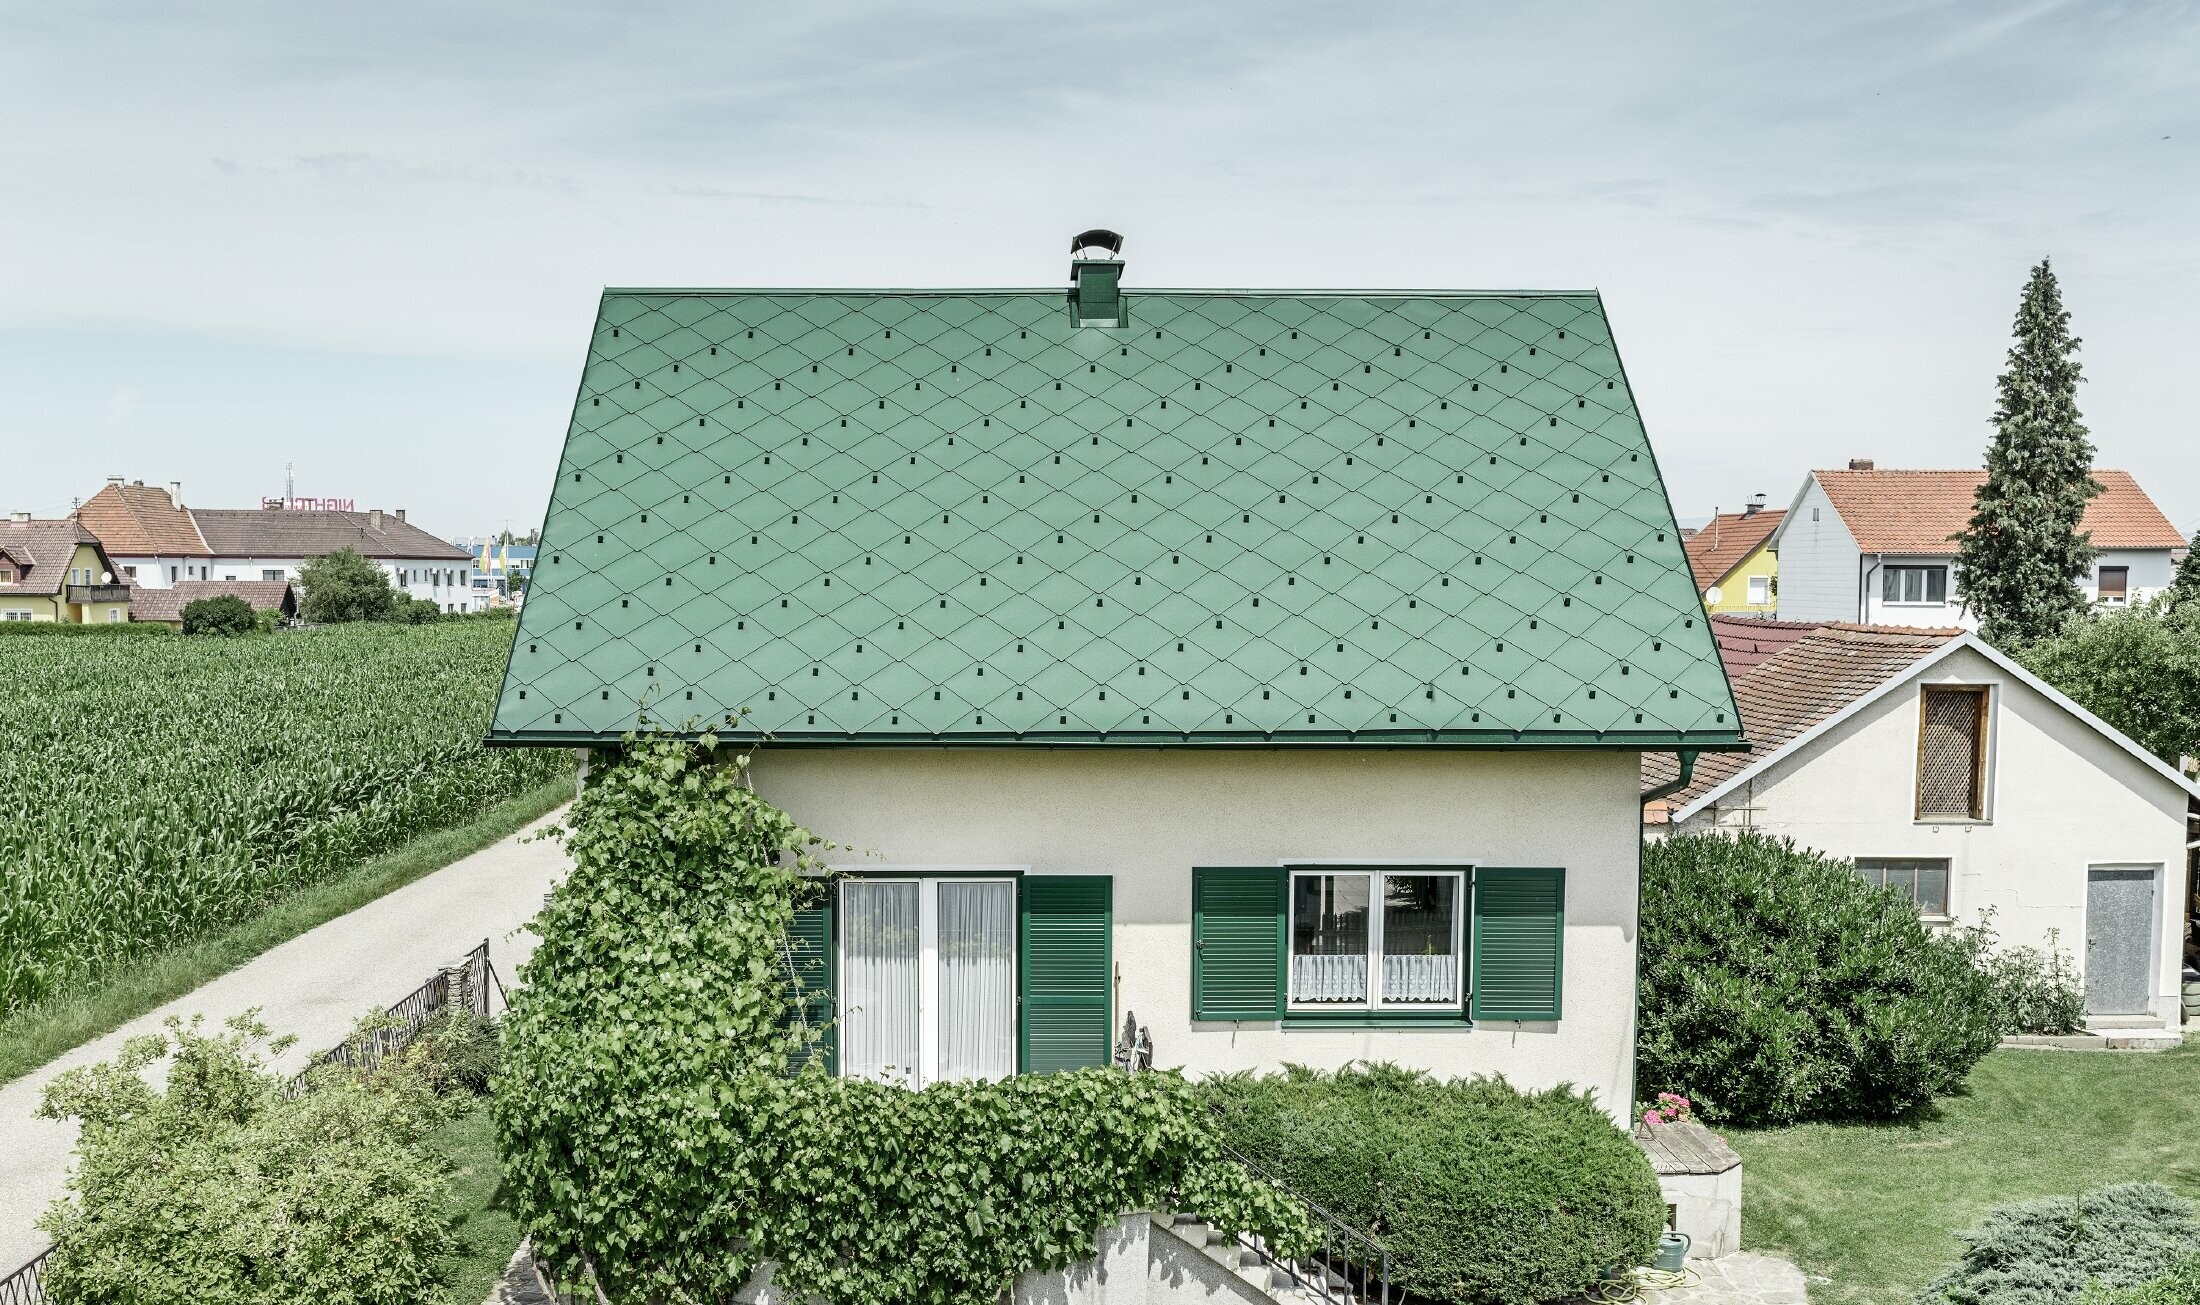 Casa unifamiliare classica con tetto a due falde con copertura in alluminio di colore verde muschio e  persiane verdi. Il tetto è stato coperto con scaglie PREFA 44 × 44 in P.10 verde muschio.